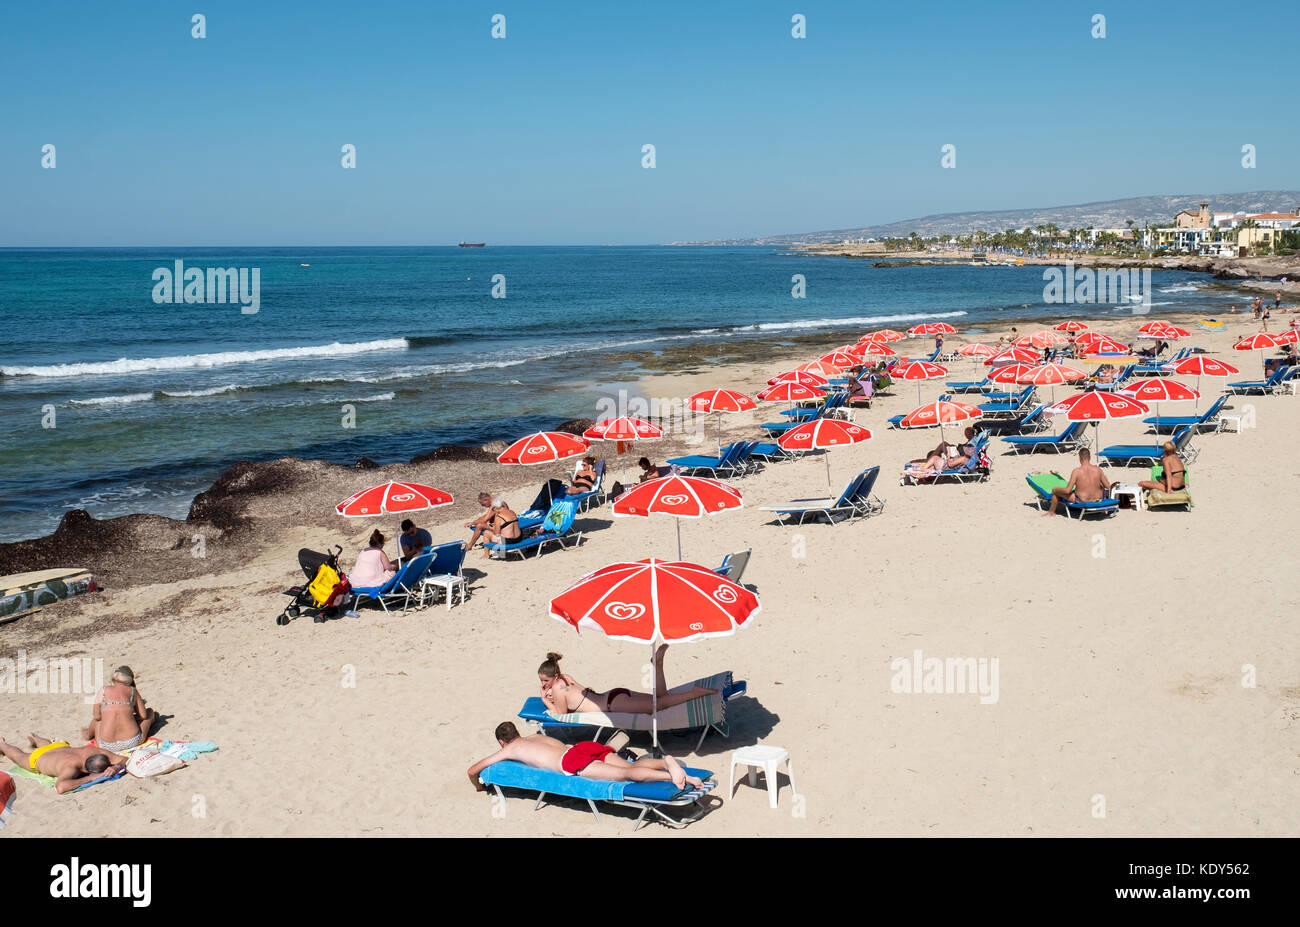 Les vacanciers se prélasser au soleil sur la plage de Kath Municipal de Paphos, Chypre. Banque D'Images